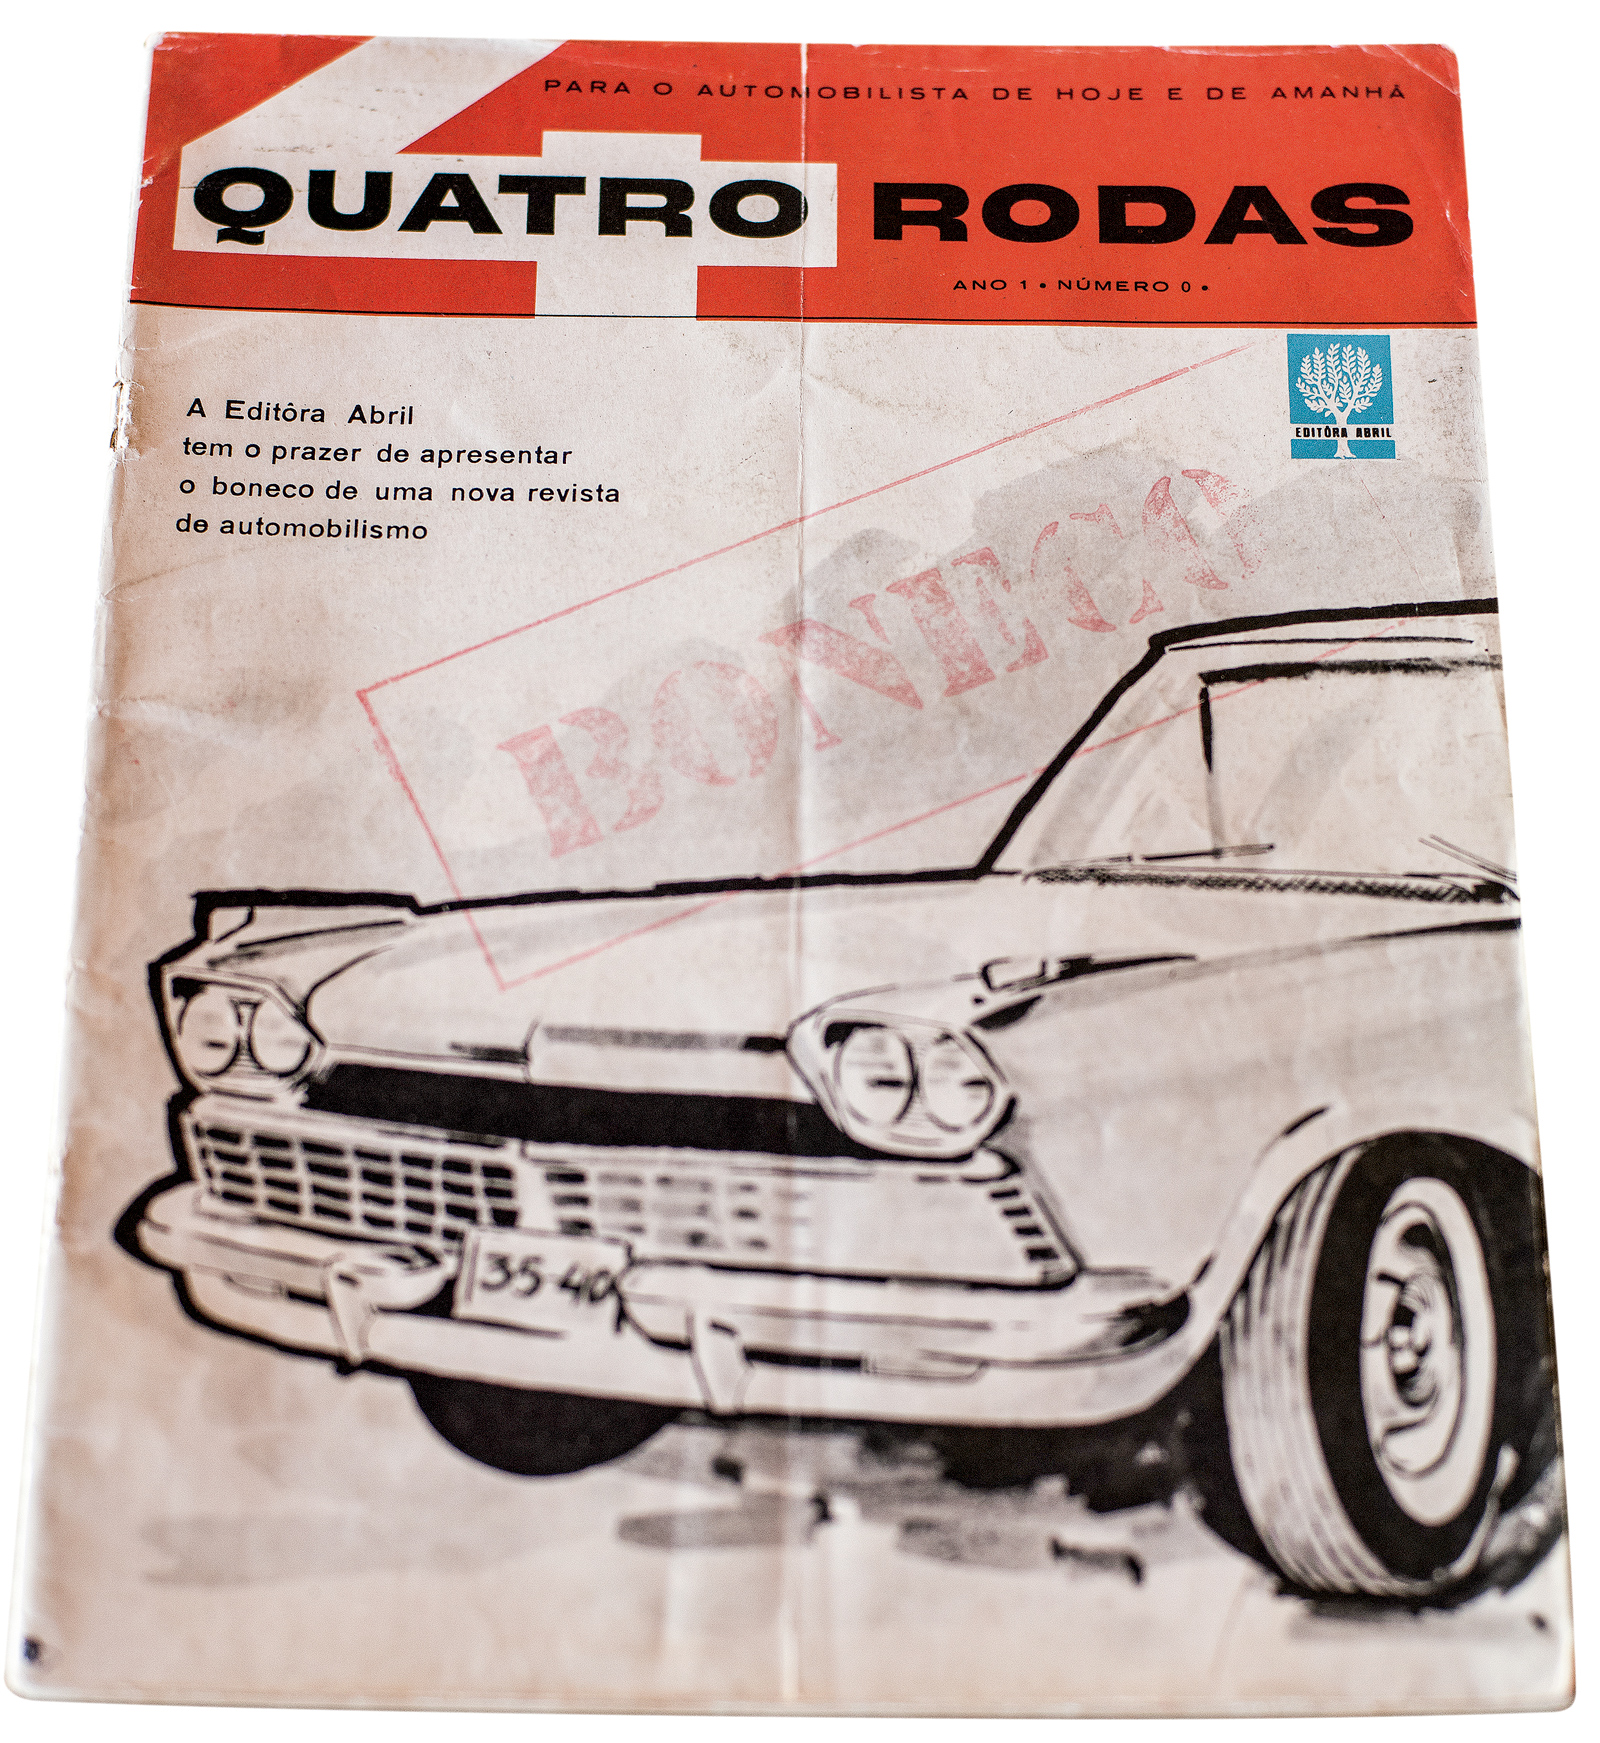 A "número zero" foi usada em 1960 para as agências de publicidade conheceram como seria a futura QUATRO RODAS